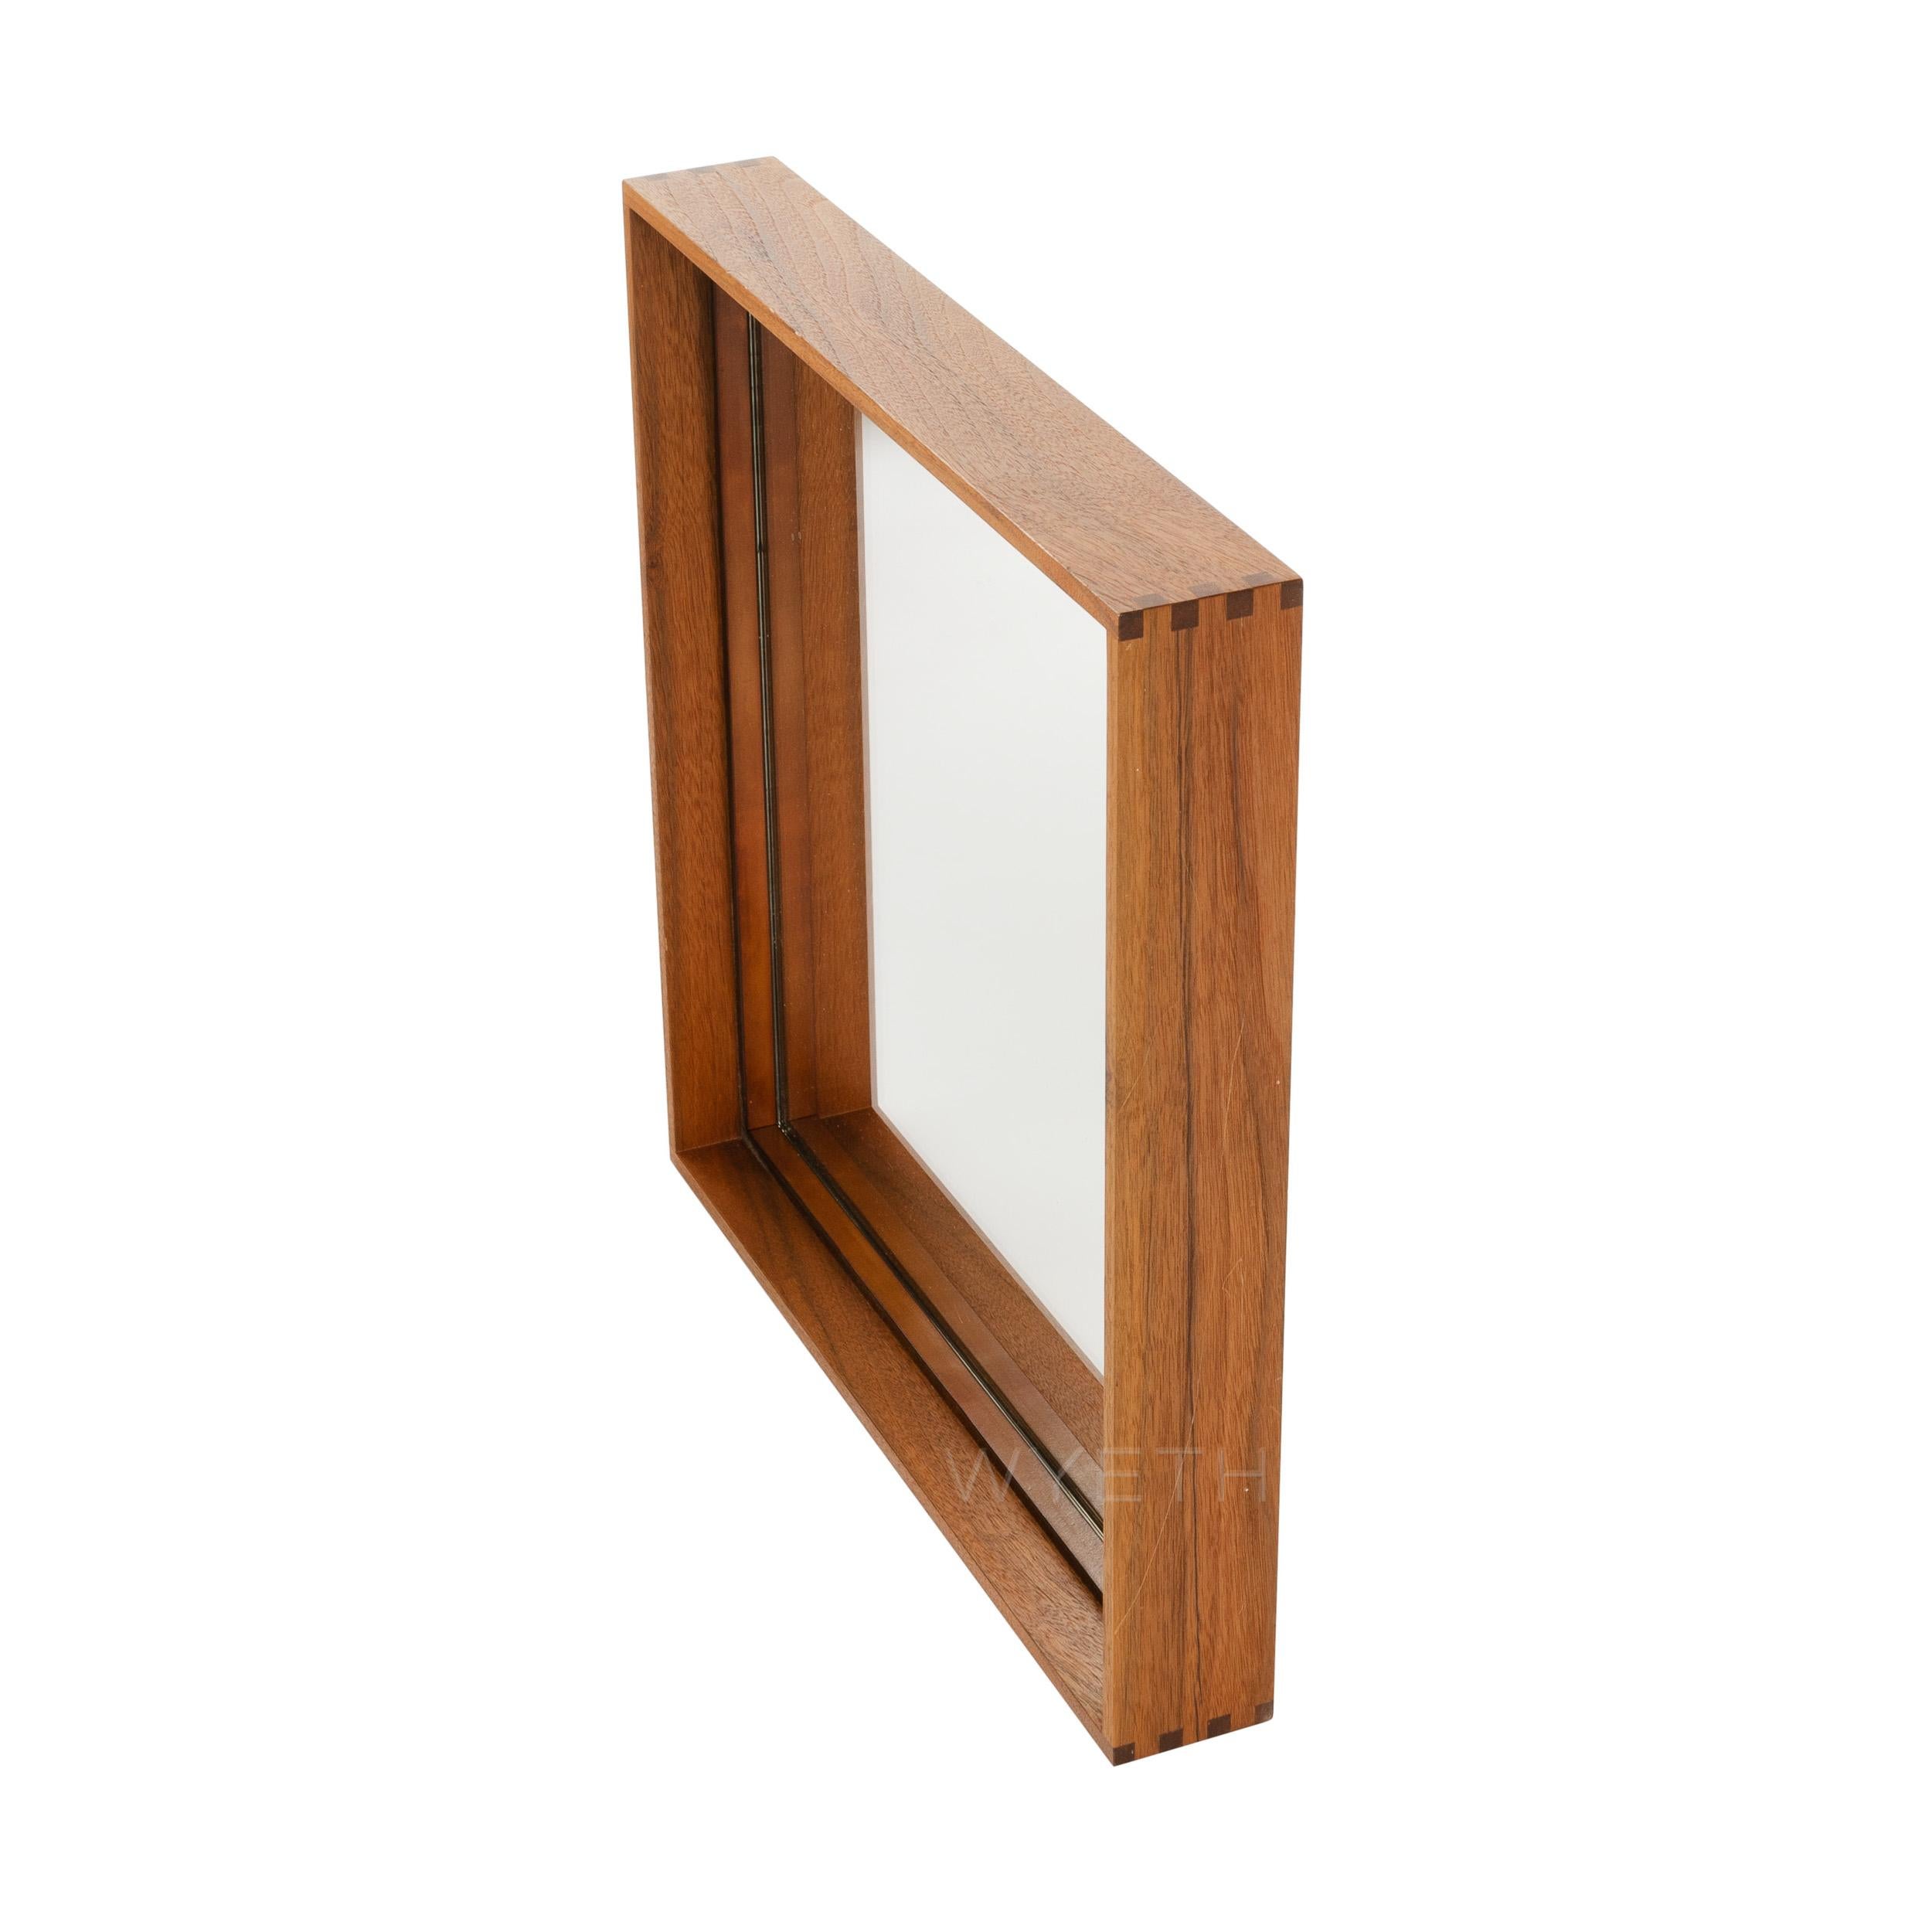 Ein Wyeth Original, dünner Rand Holzspiegel mit Box geschnitten Ecken in Nussbaum. Erhältlich in kundenspezifischen Größen.